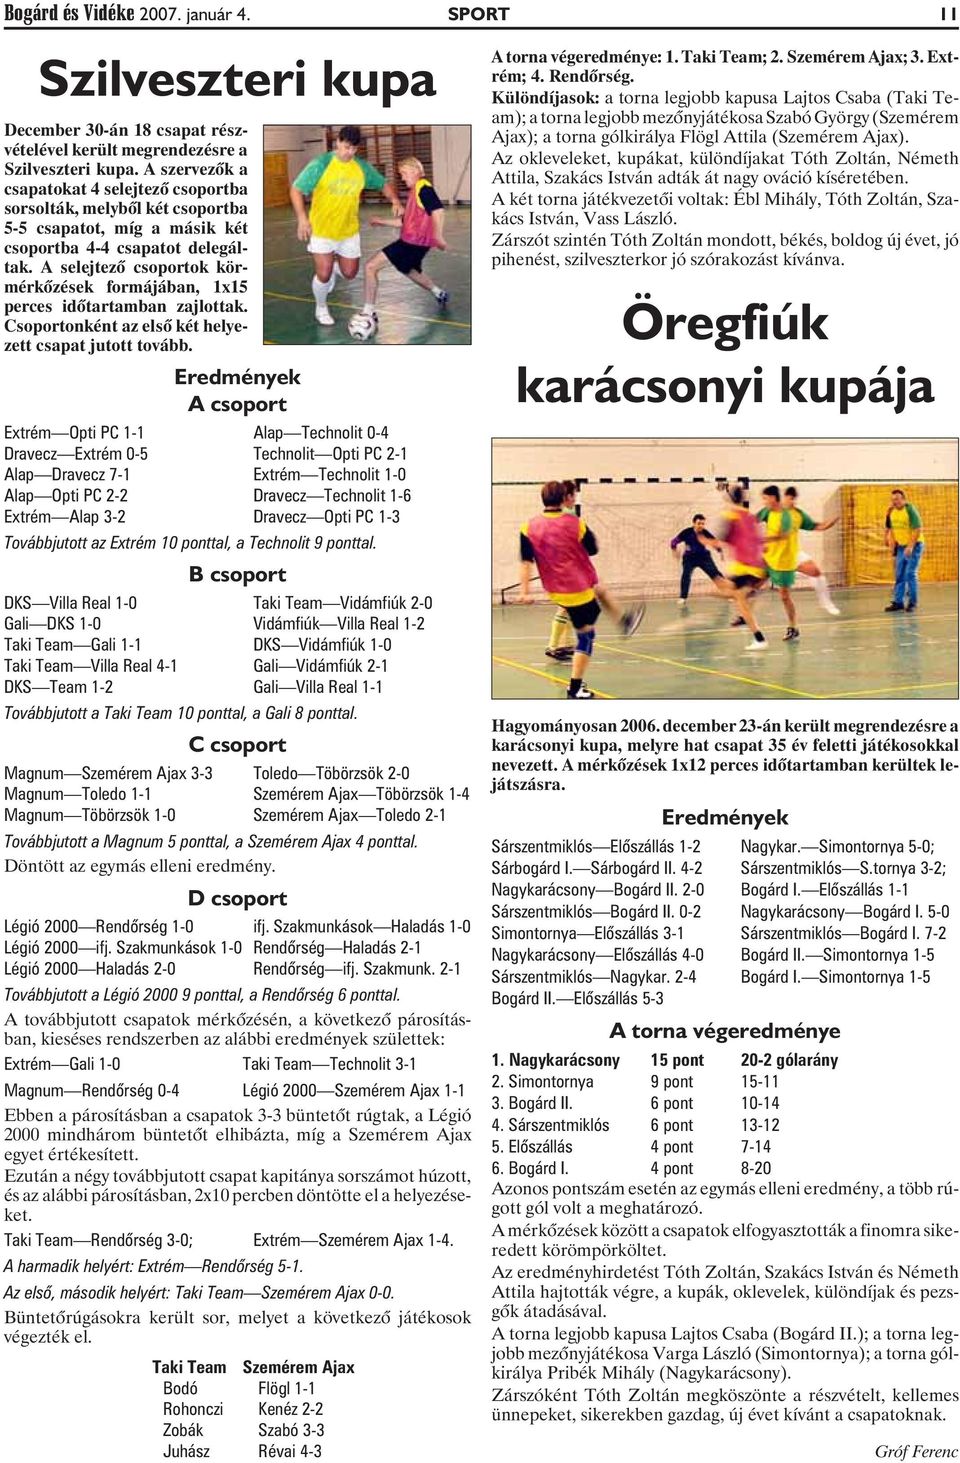 A selejtezõ csoportok körmérkõzések formájában, 1x15 perces idõtartamban zajlottak. Csoportonként az elsõ két helyezett csapat jutott tovább.